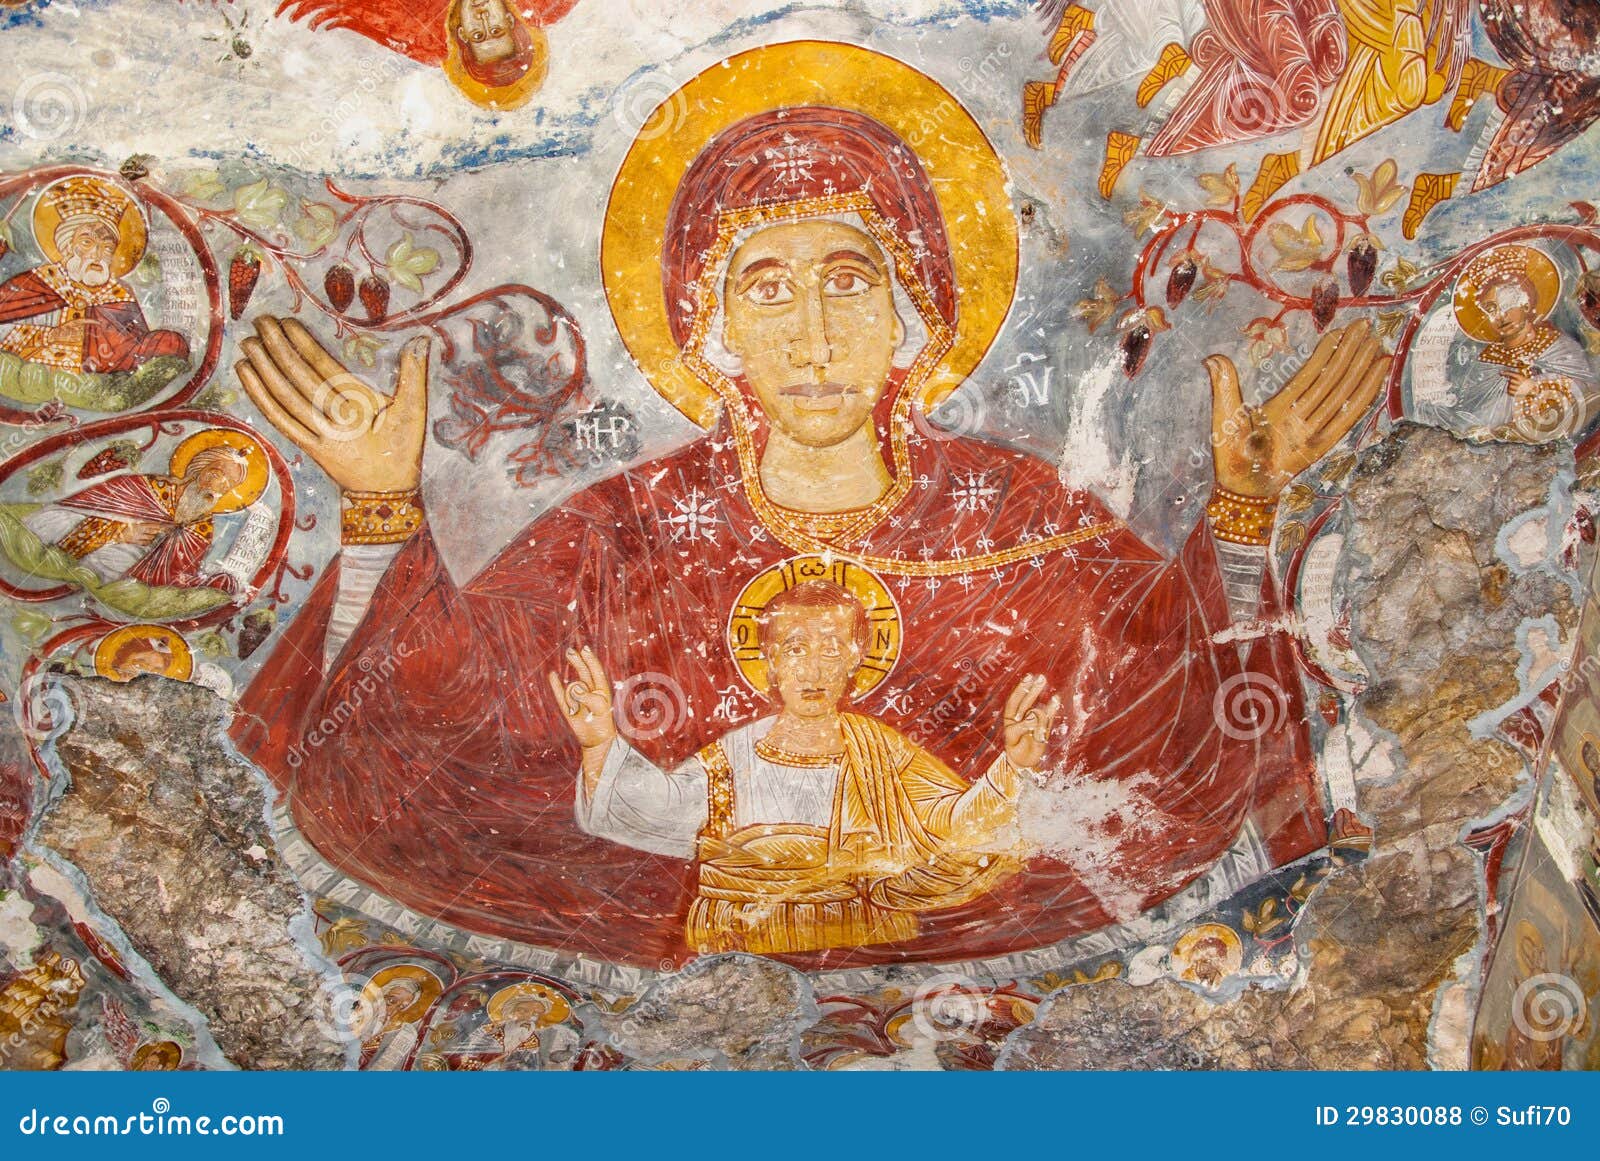 religious paintings in sumela monastery